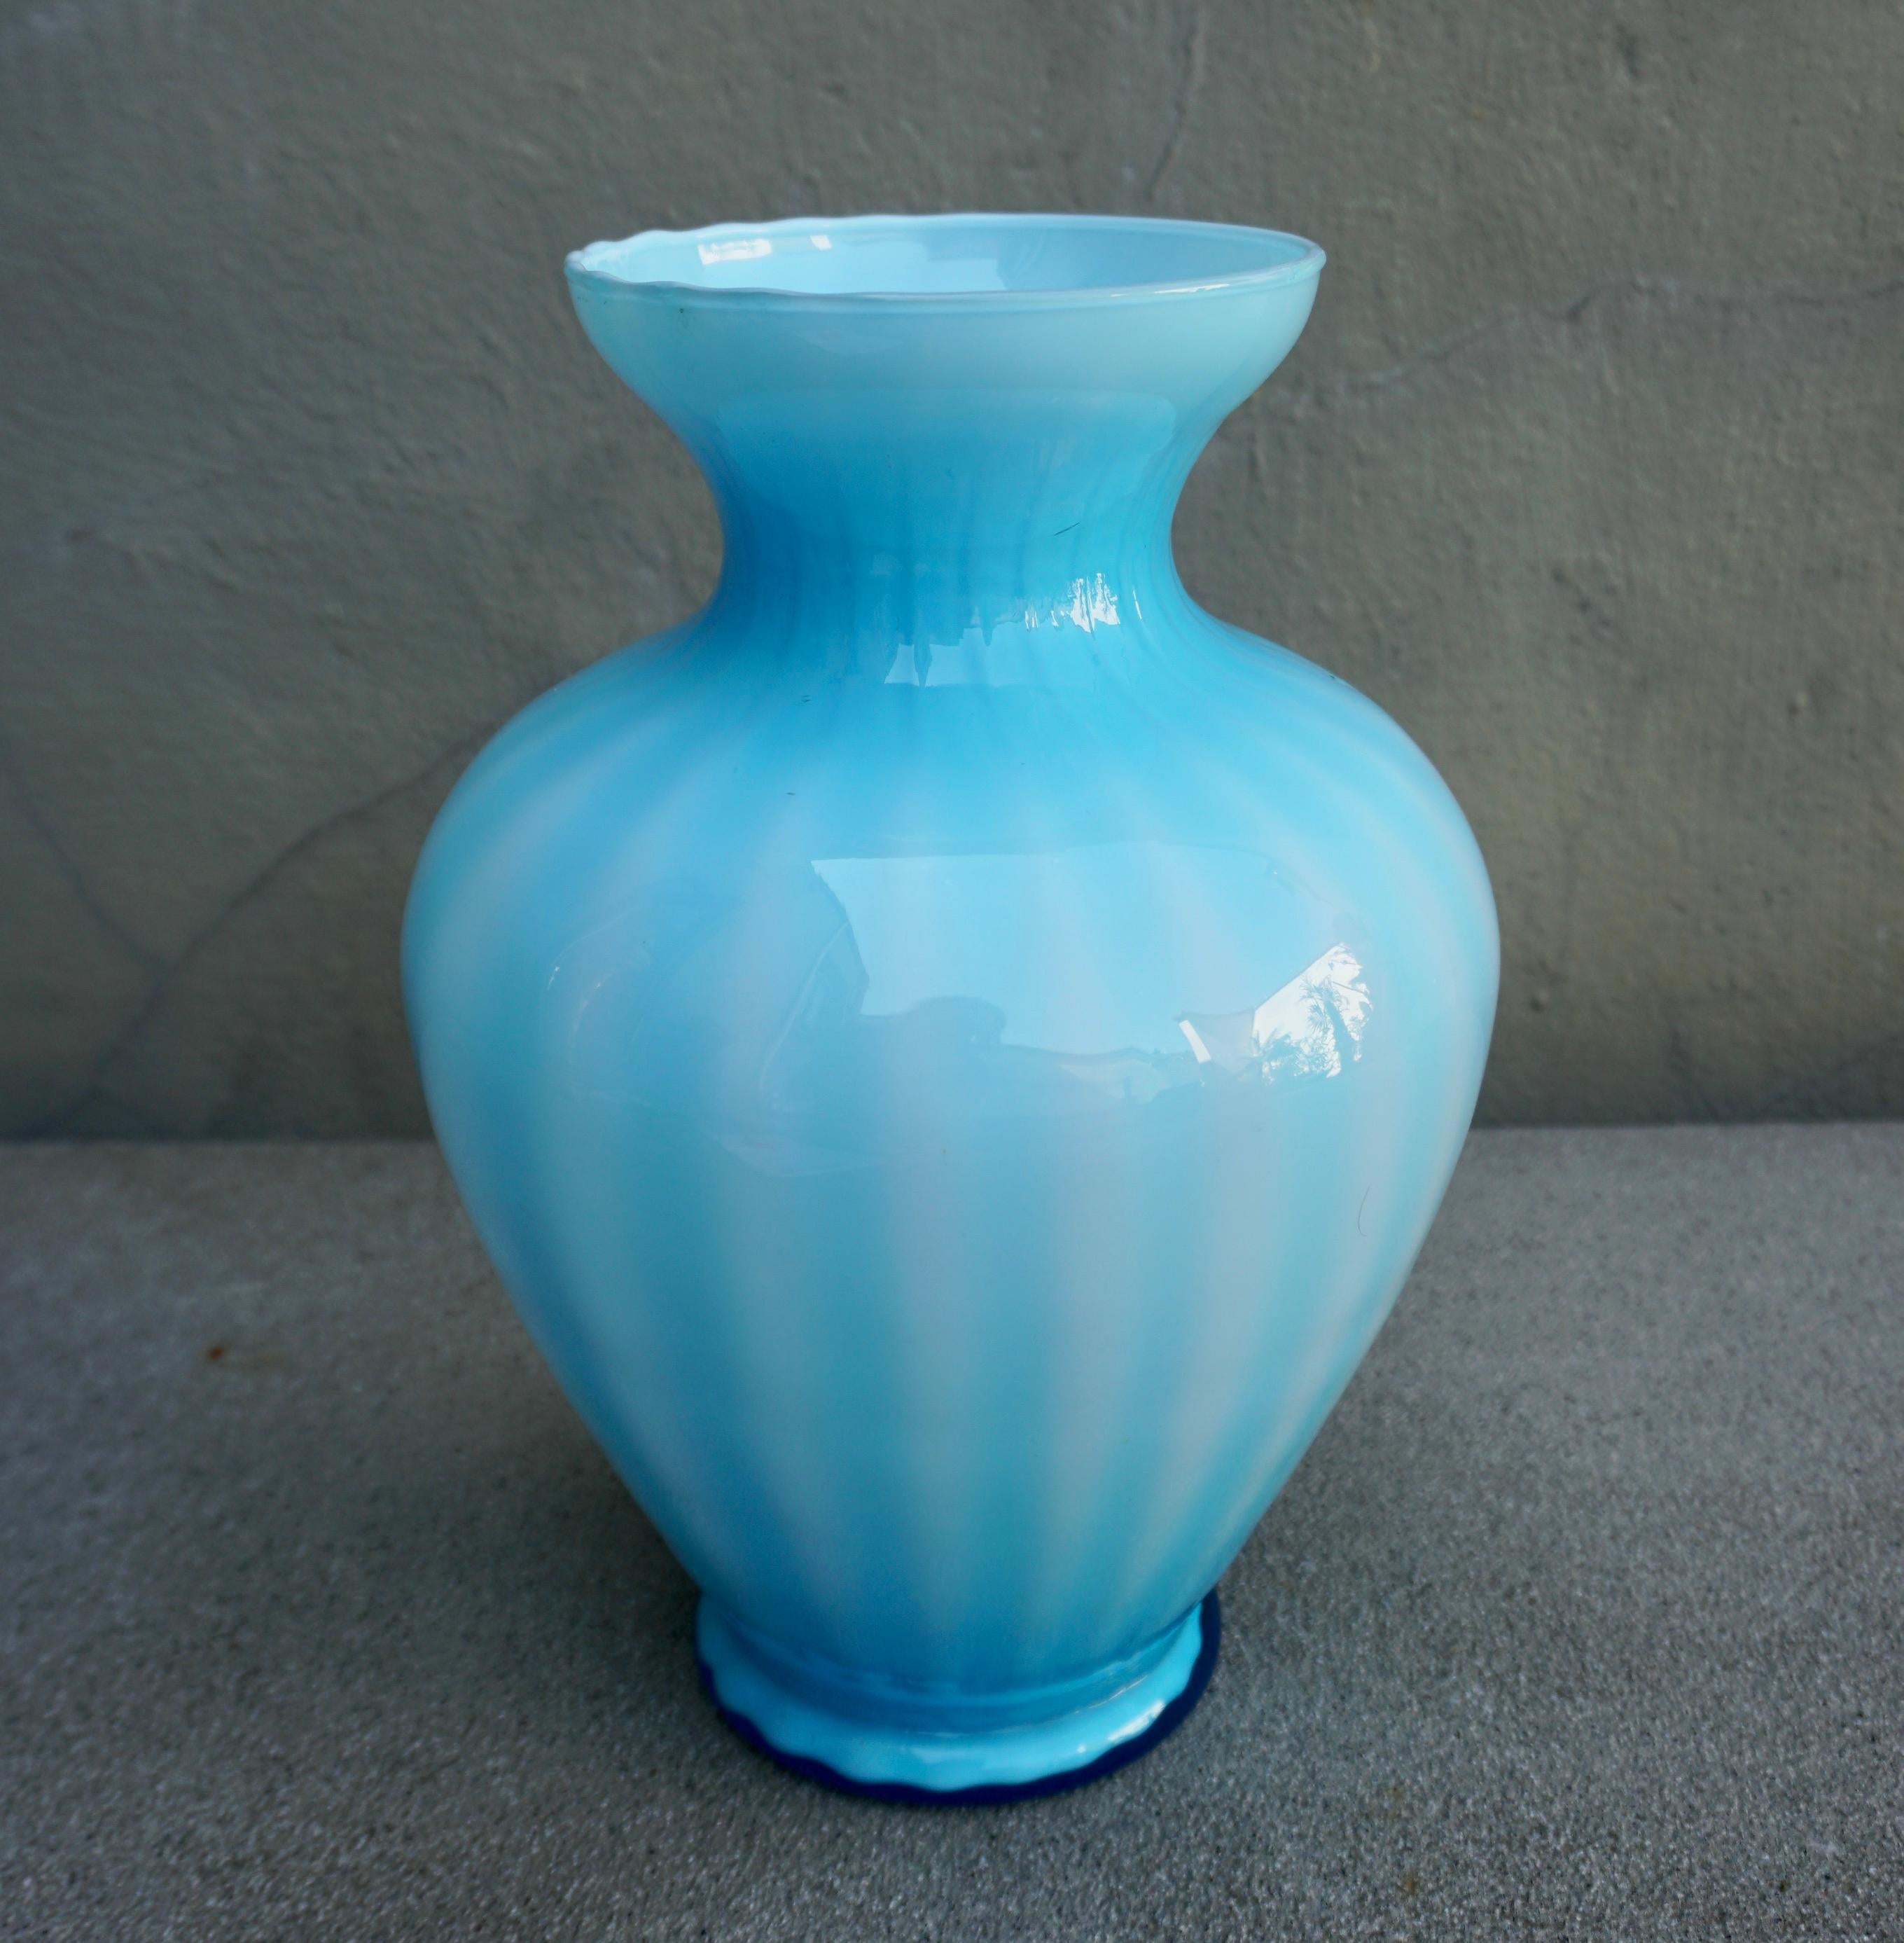 Très grand vase vintage en verre de Murano dans un ton bleu clair parfait. Verre bleu soufflé à la bouche. 
Fait à la main en Italie, années 1970. 

H : 12.2